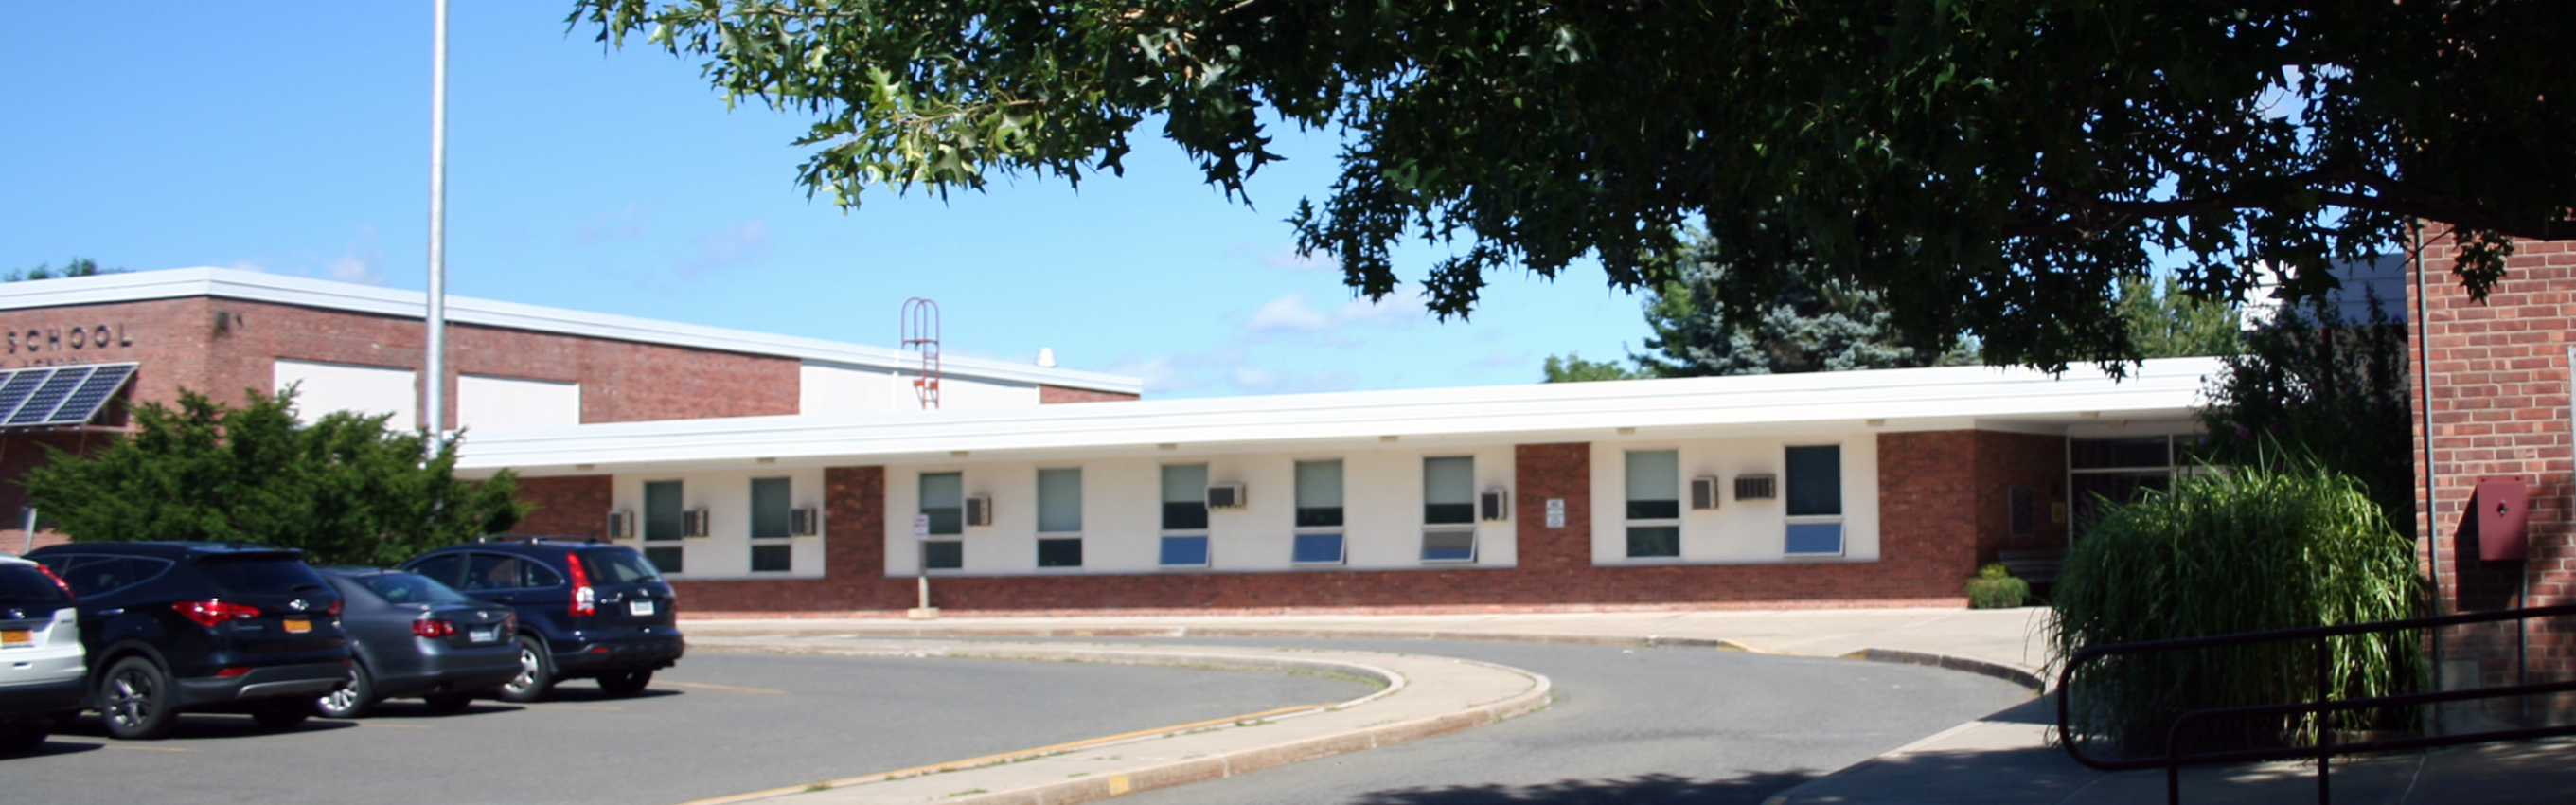 Mary E. Dardess Elementary School 